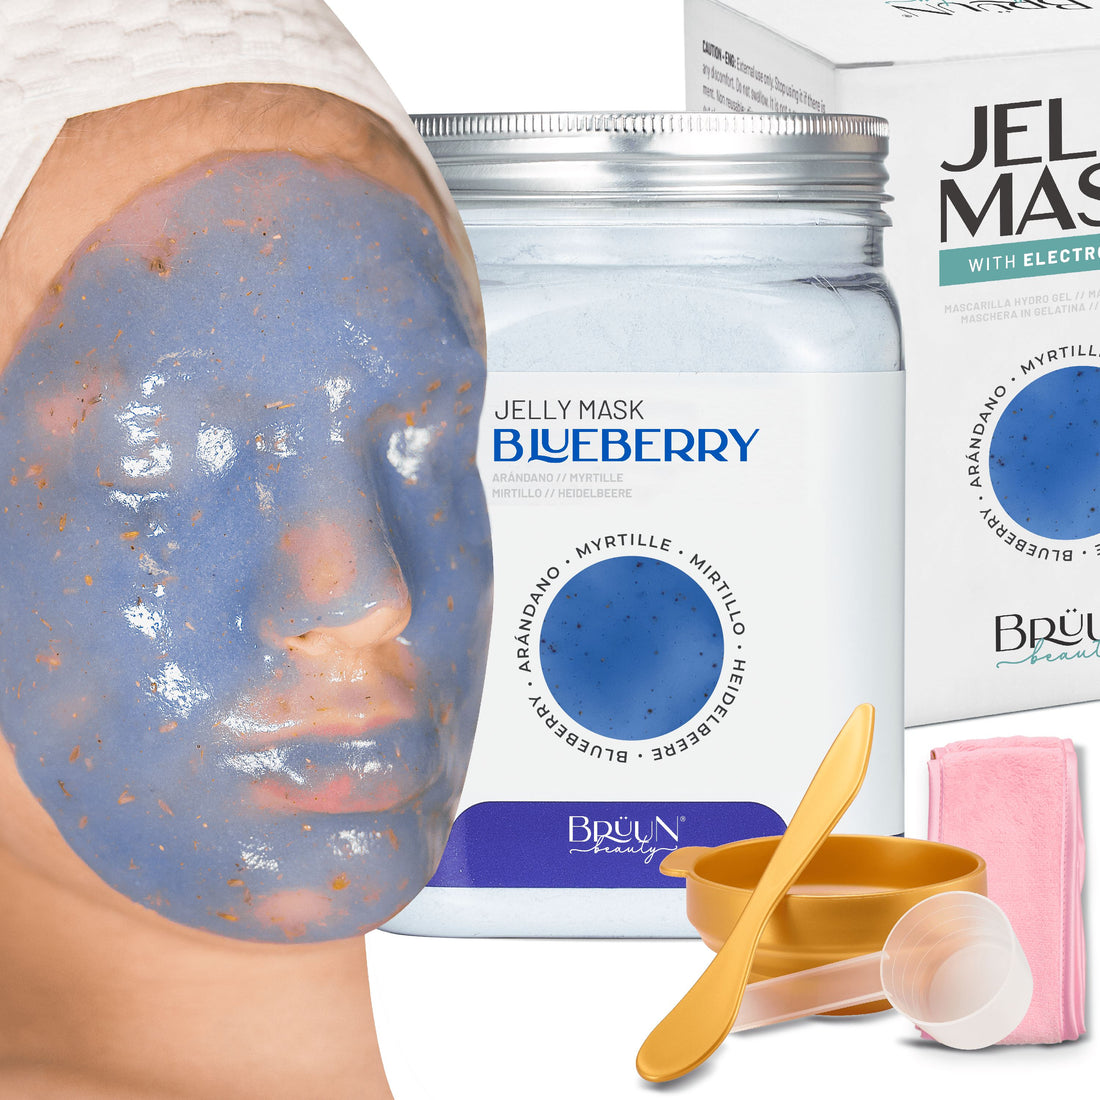 Blueberry Burst Jelly Mask Jar Face Care Rubber Mask SH-Blueberry Jar Bruun Beauty 